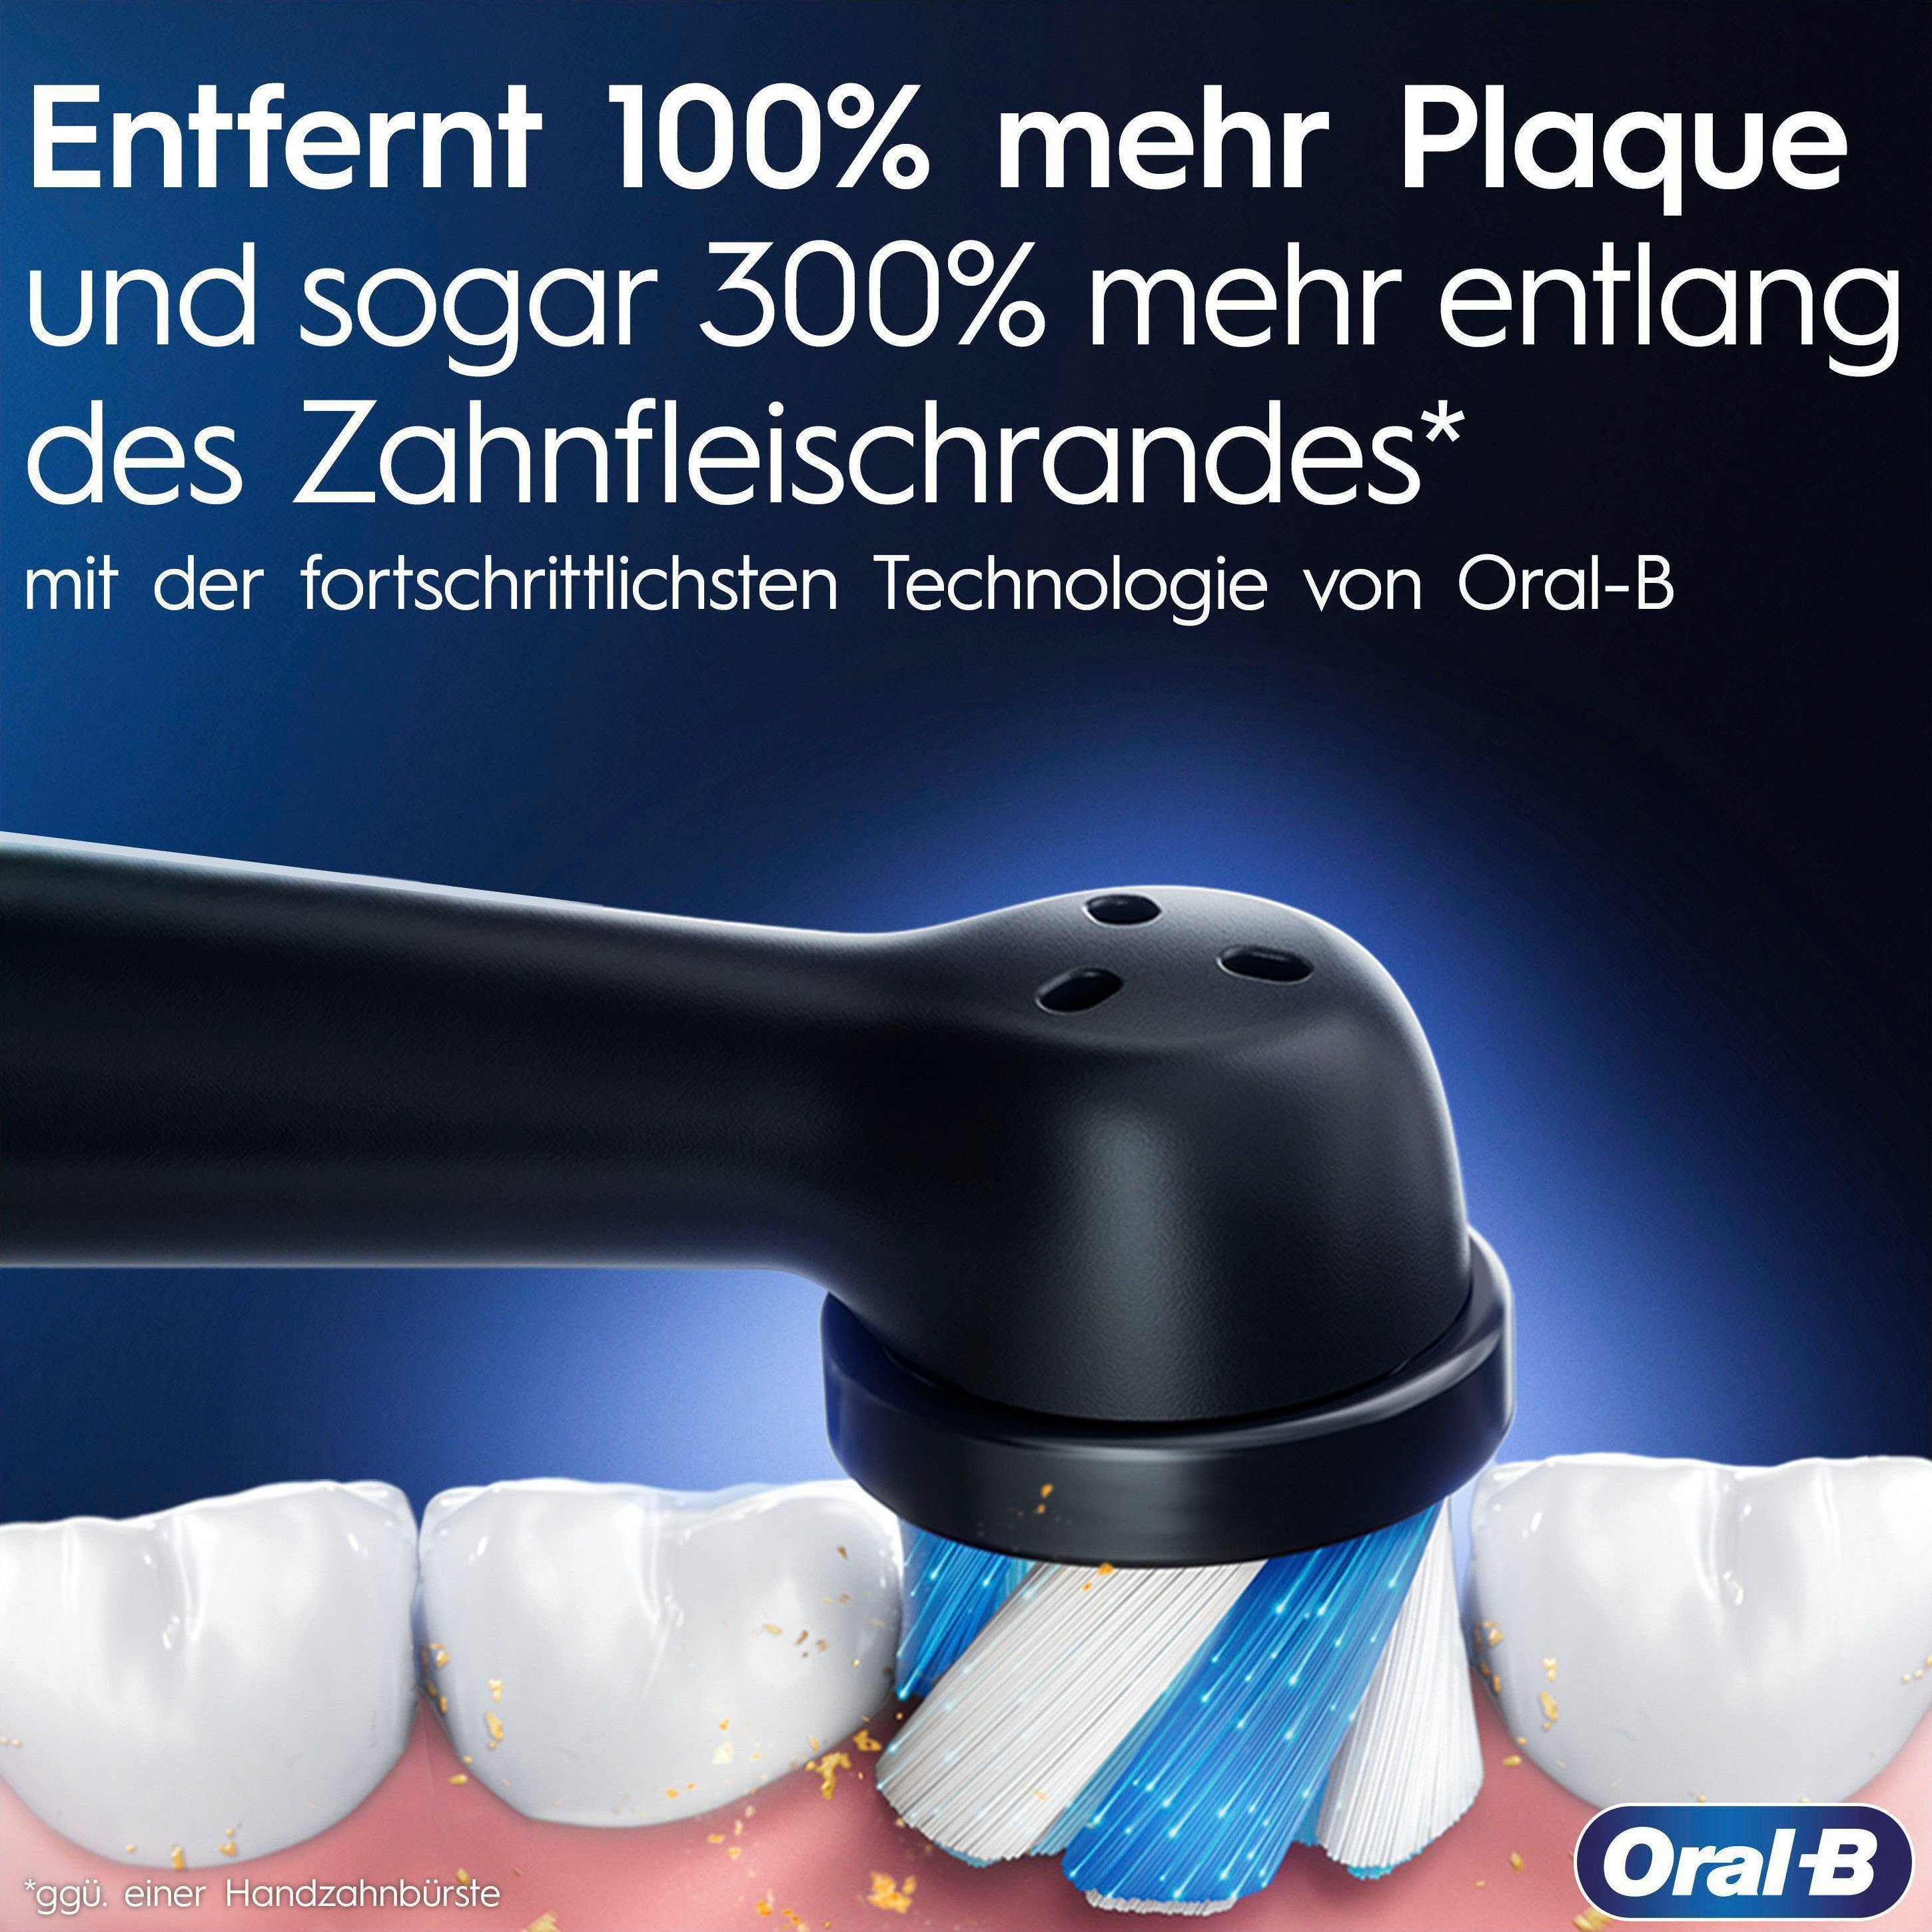 Oral-B Elektrische Zahnbürste iO 9, mit 2 Aufsteckbürsten: Quartz 7 Rose Putzmodi, Lade-Reiseetui Magnet-Technologie, & Farbdisplay St